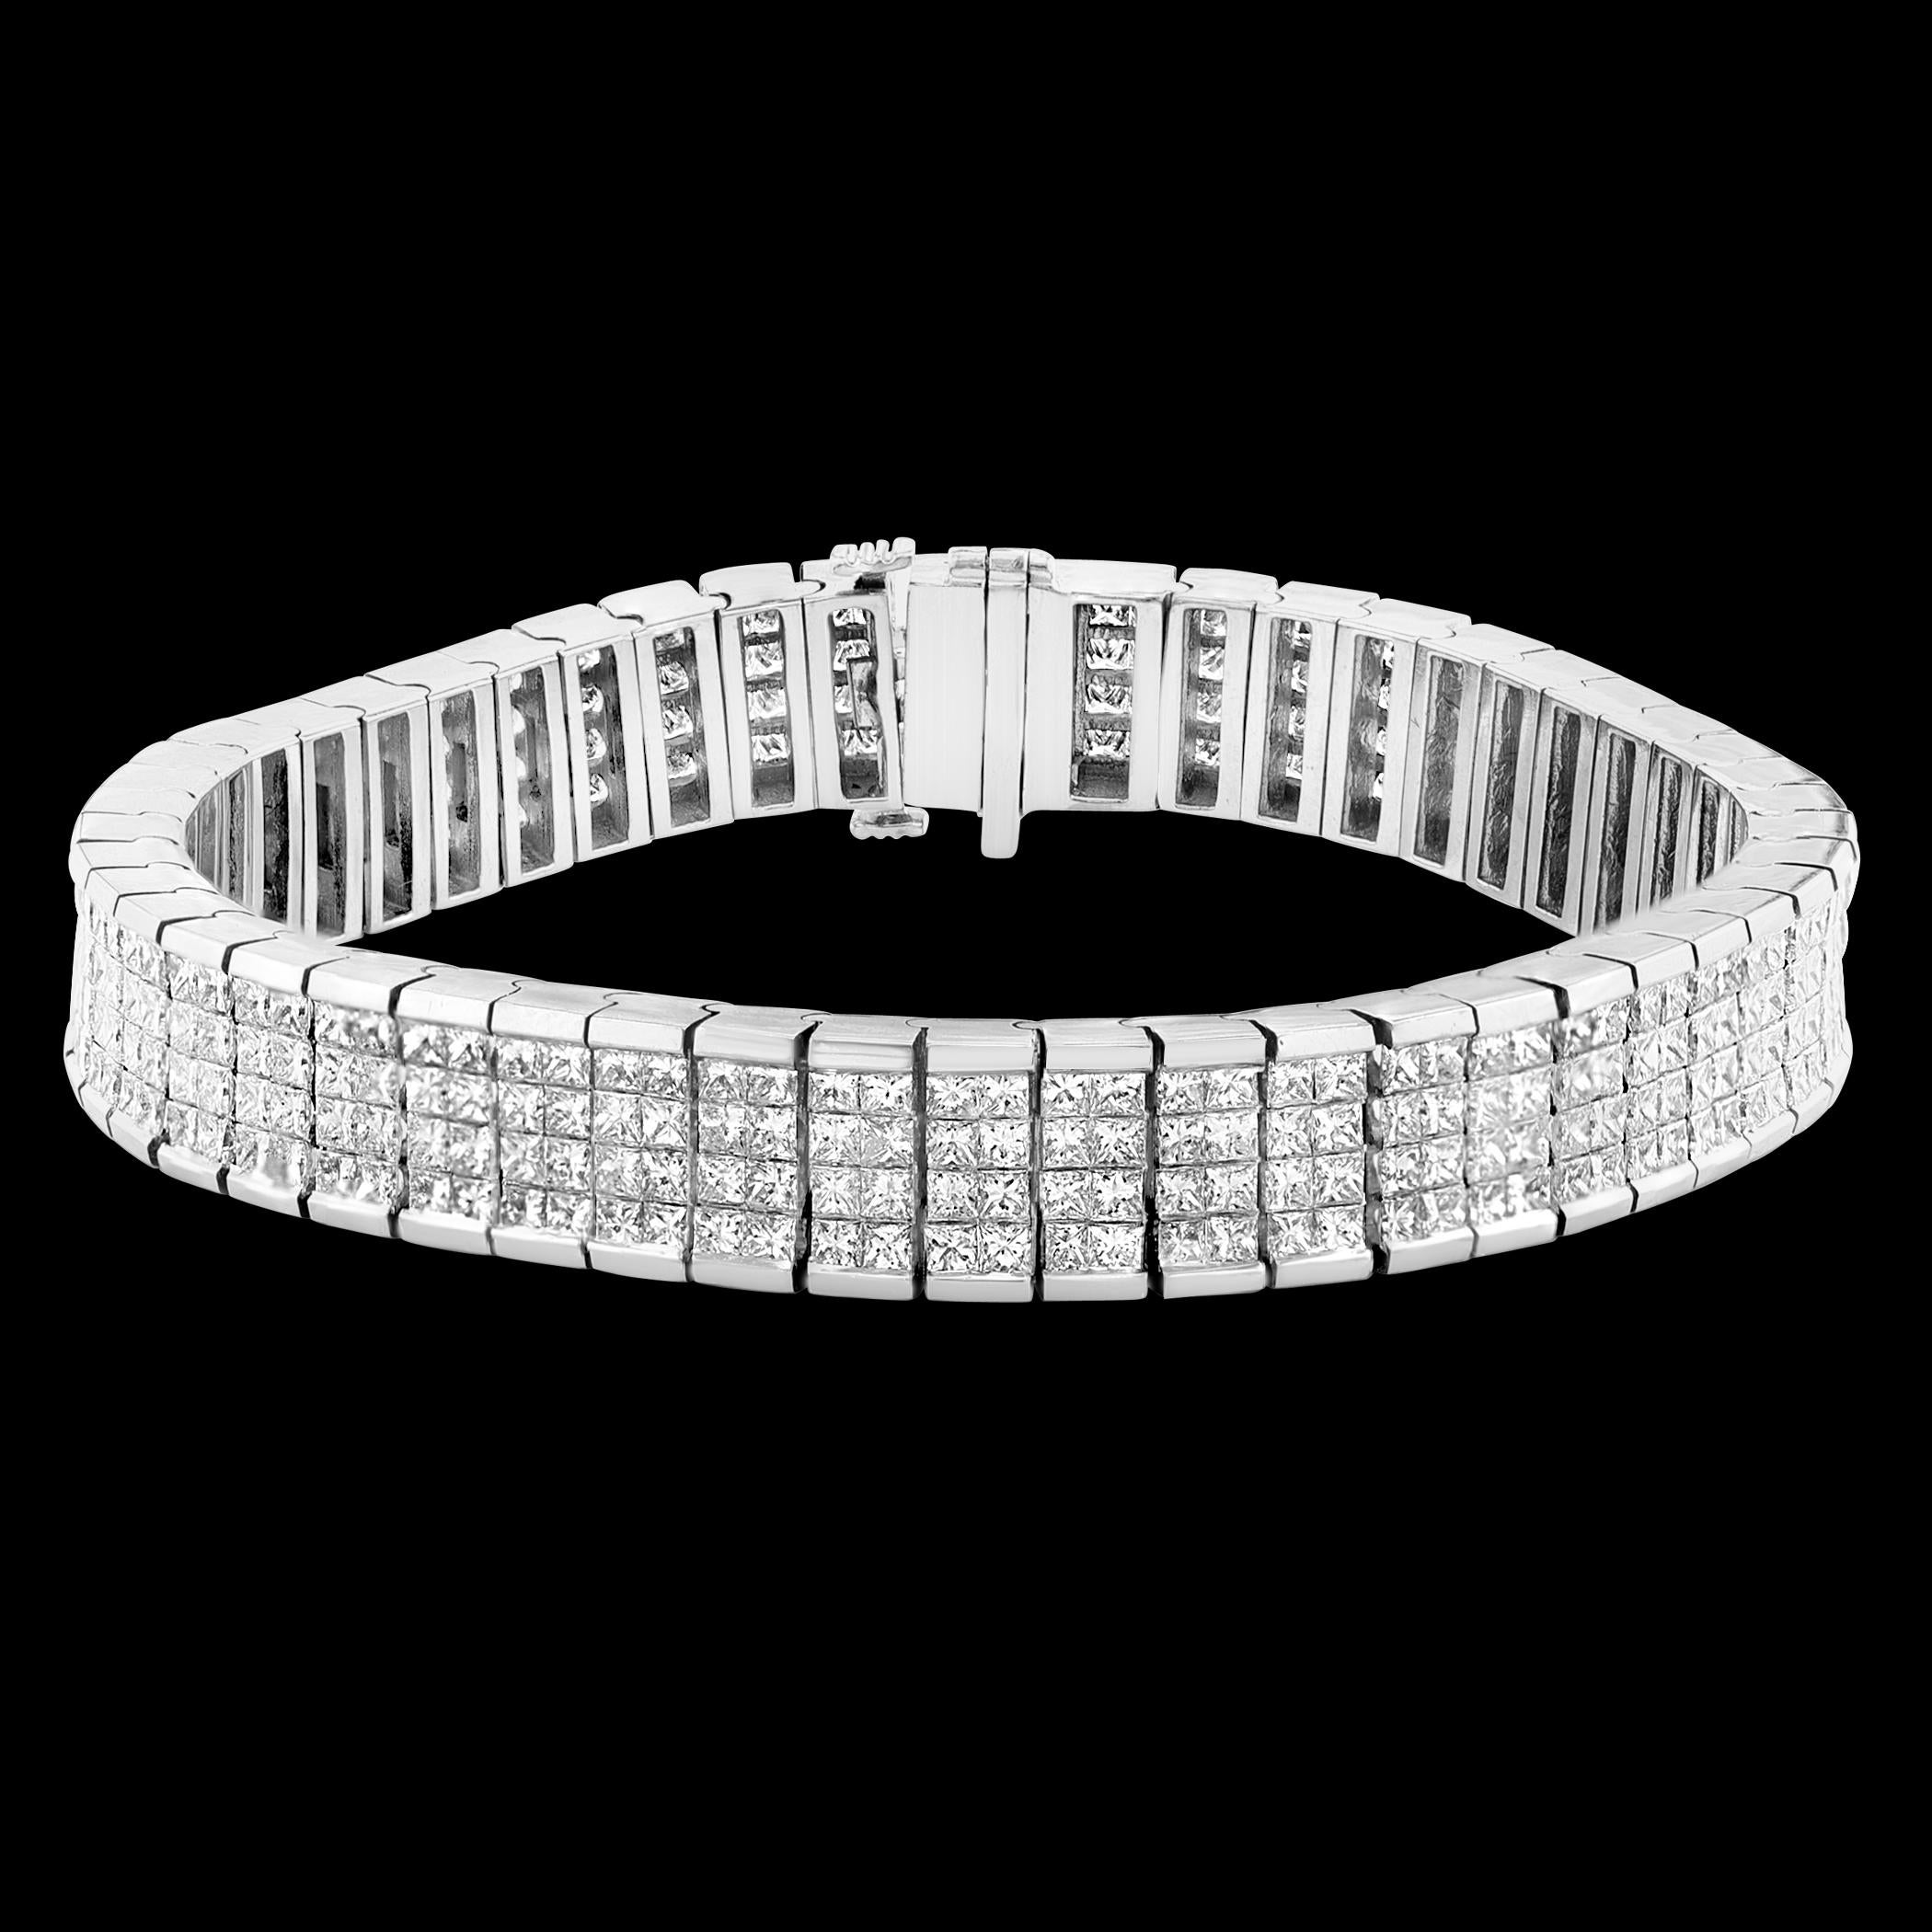 
Un bracelet de tennis classique sur quatre rangs de diamants de taille princesse qui pèse 24 Carats.
DIAMANTS BLANCS, BRILLANTS, NATURELS, SANS REHAUSSEMENT
Il mesure 7,3 pouces de long, 9,3 mm de large et 3,95 mm d'épaisseur. 
Il s'adaptera